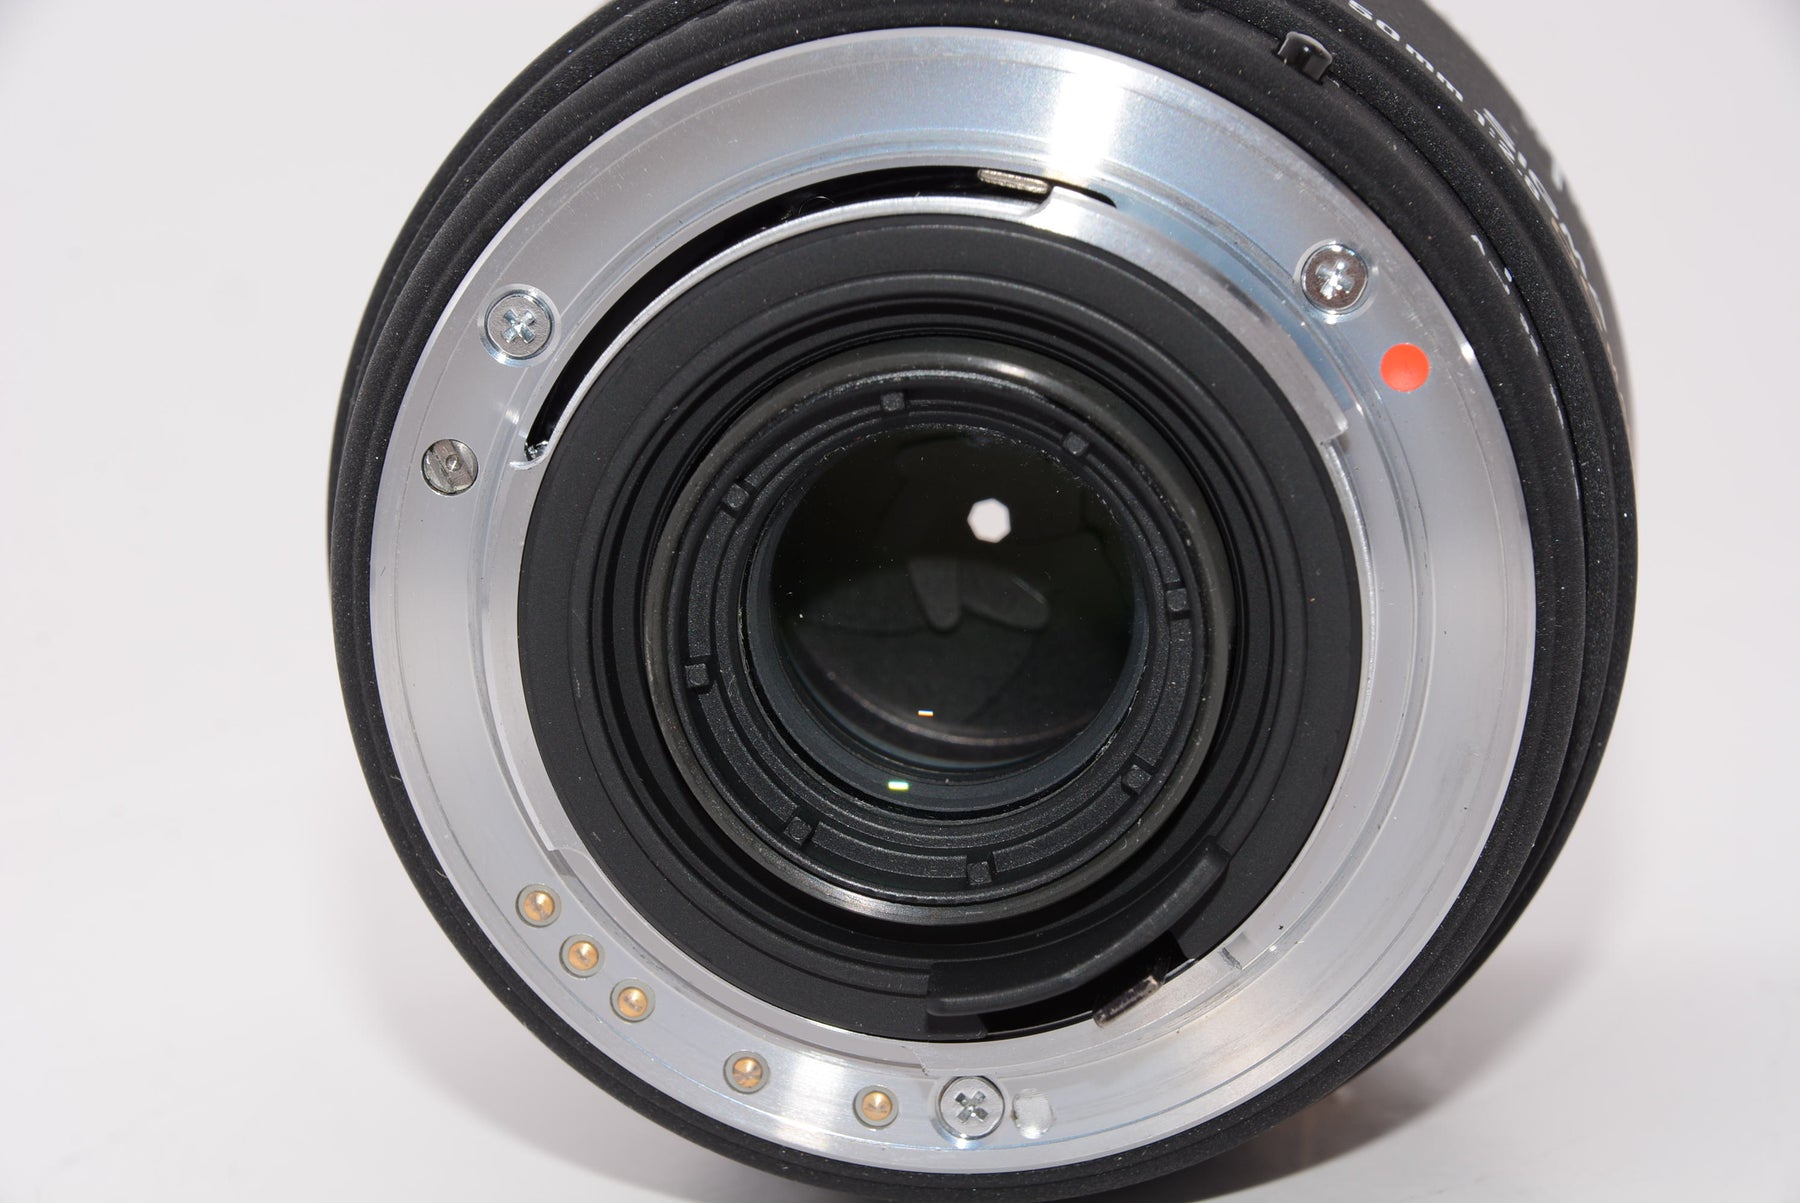 【外観特上級】SIGMA 単焦点マクロレンズ MACRO 50mm F2.8 EX DG ペンタックス用 フルサイズ対応